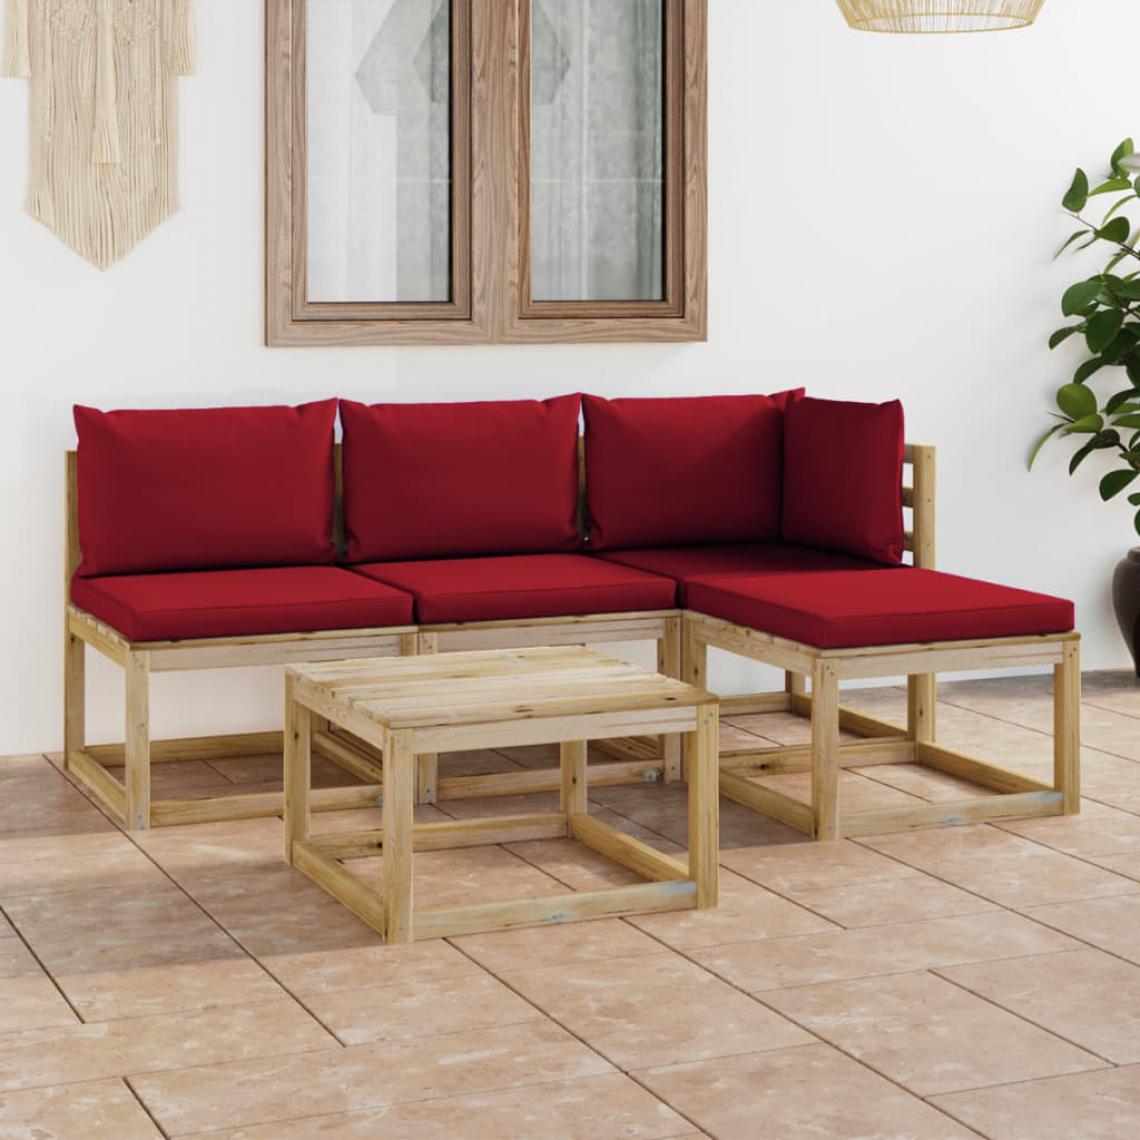 Chunhelife - Salon de jardin 5 pcs avec coussins rouge bordeaux - Ensembles canapés et fauteuils